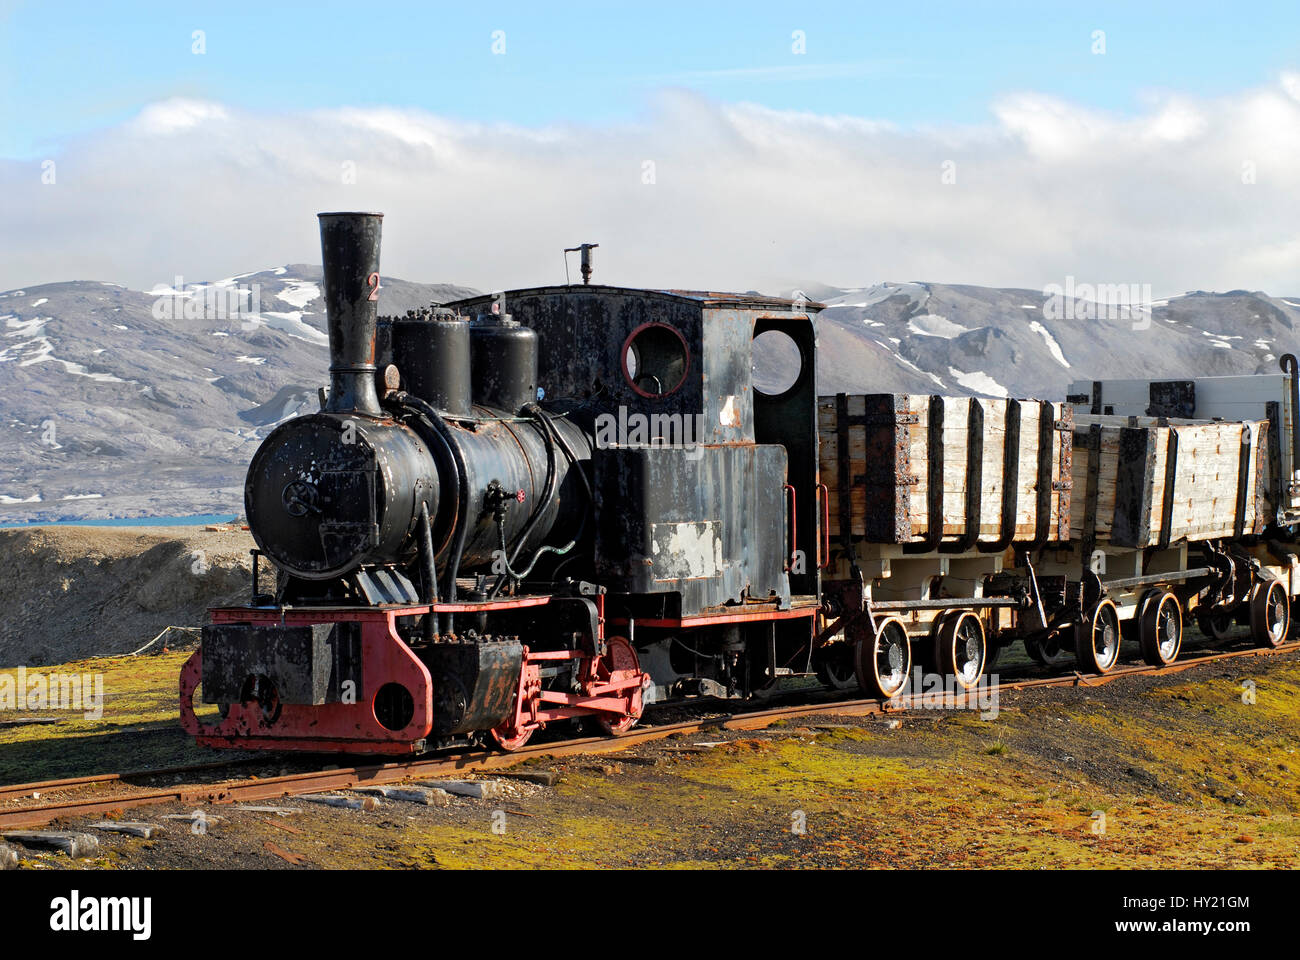 Lo stock foto mostra la miniera aboundoned treno sul display in remoto villaggio di Ny Alesund in Spitzbergen che appartiene alla Norvegia. Questa linea ferroviaria wa Foto Stock